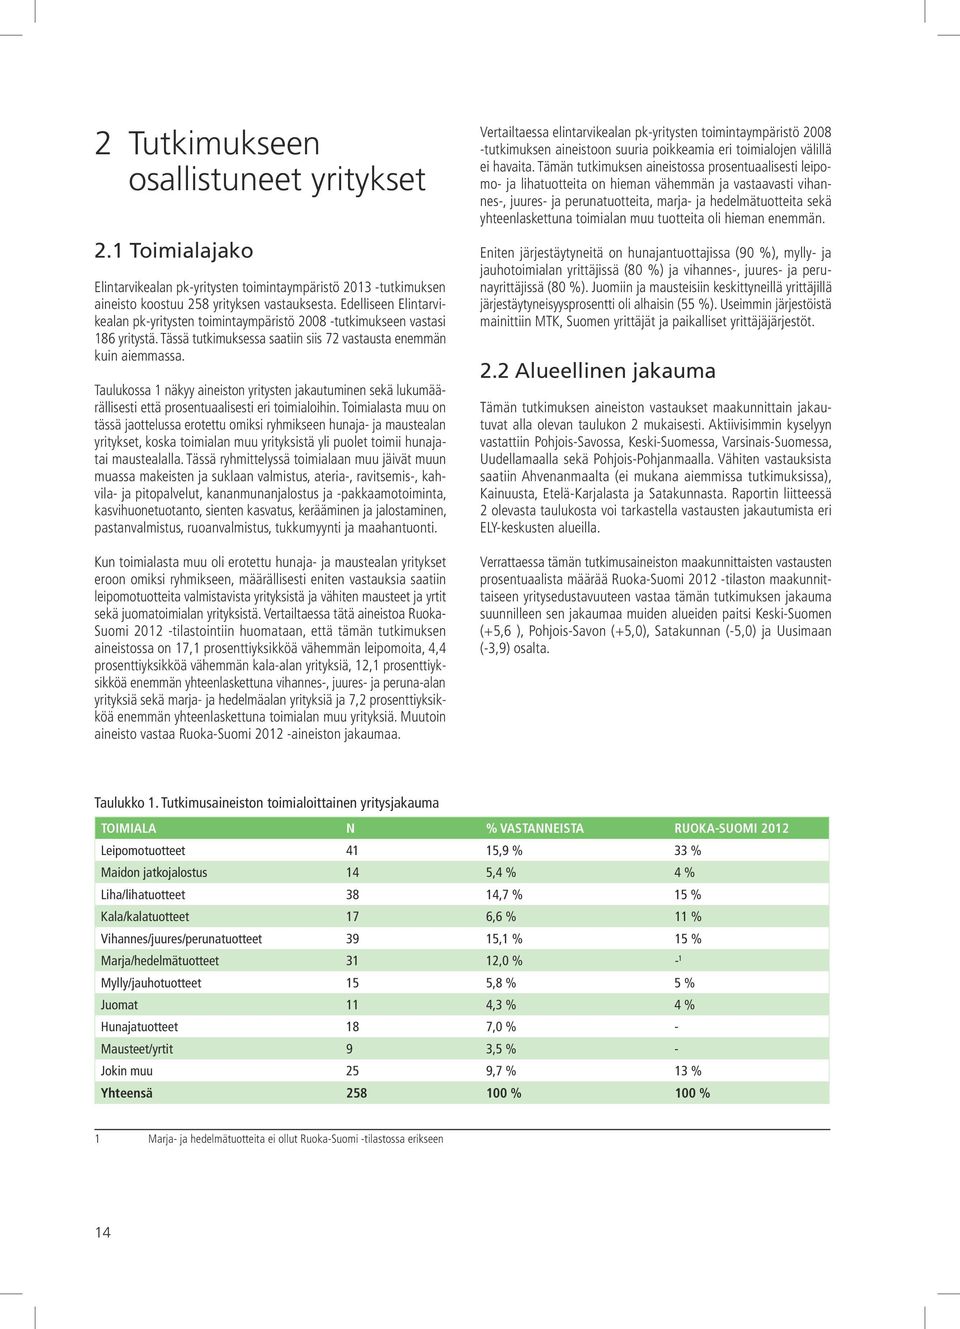 Taulukossa 1 näkyy aineiston yritysten jakautuminen sekä lukumäärällisesti että prosentuaalisesti eri toimialoihin.